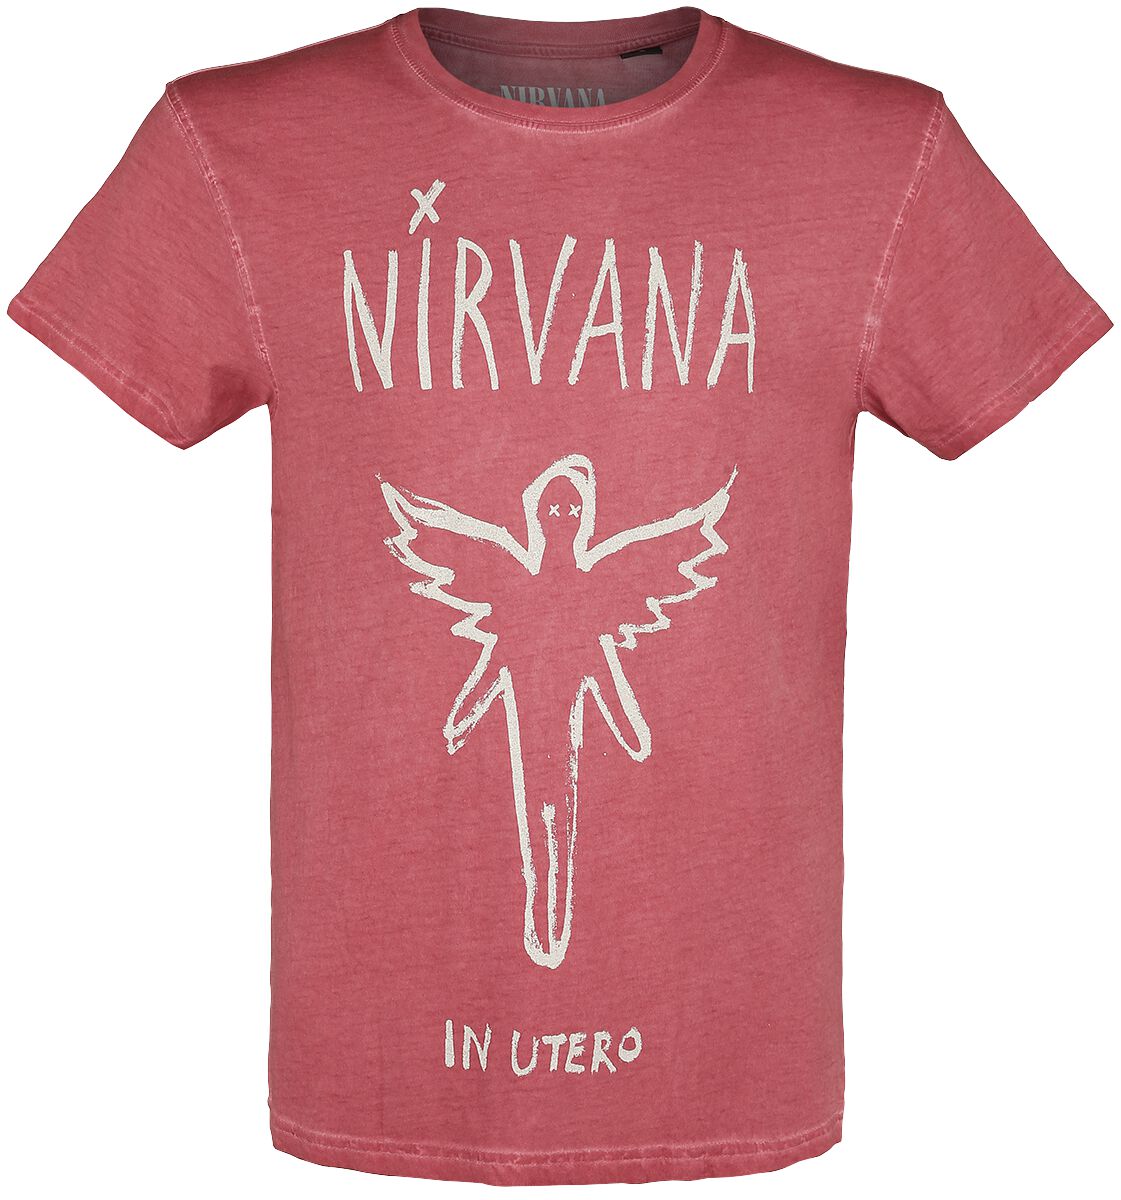 Nirvana T-Shirt - In Utero - S bis XXL - für Männer - Größe M - rot  - Lizenziertes Merchandise!